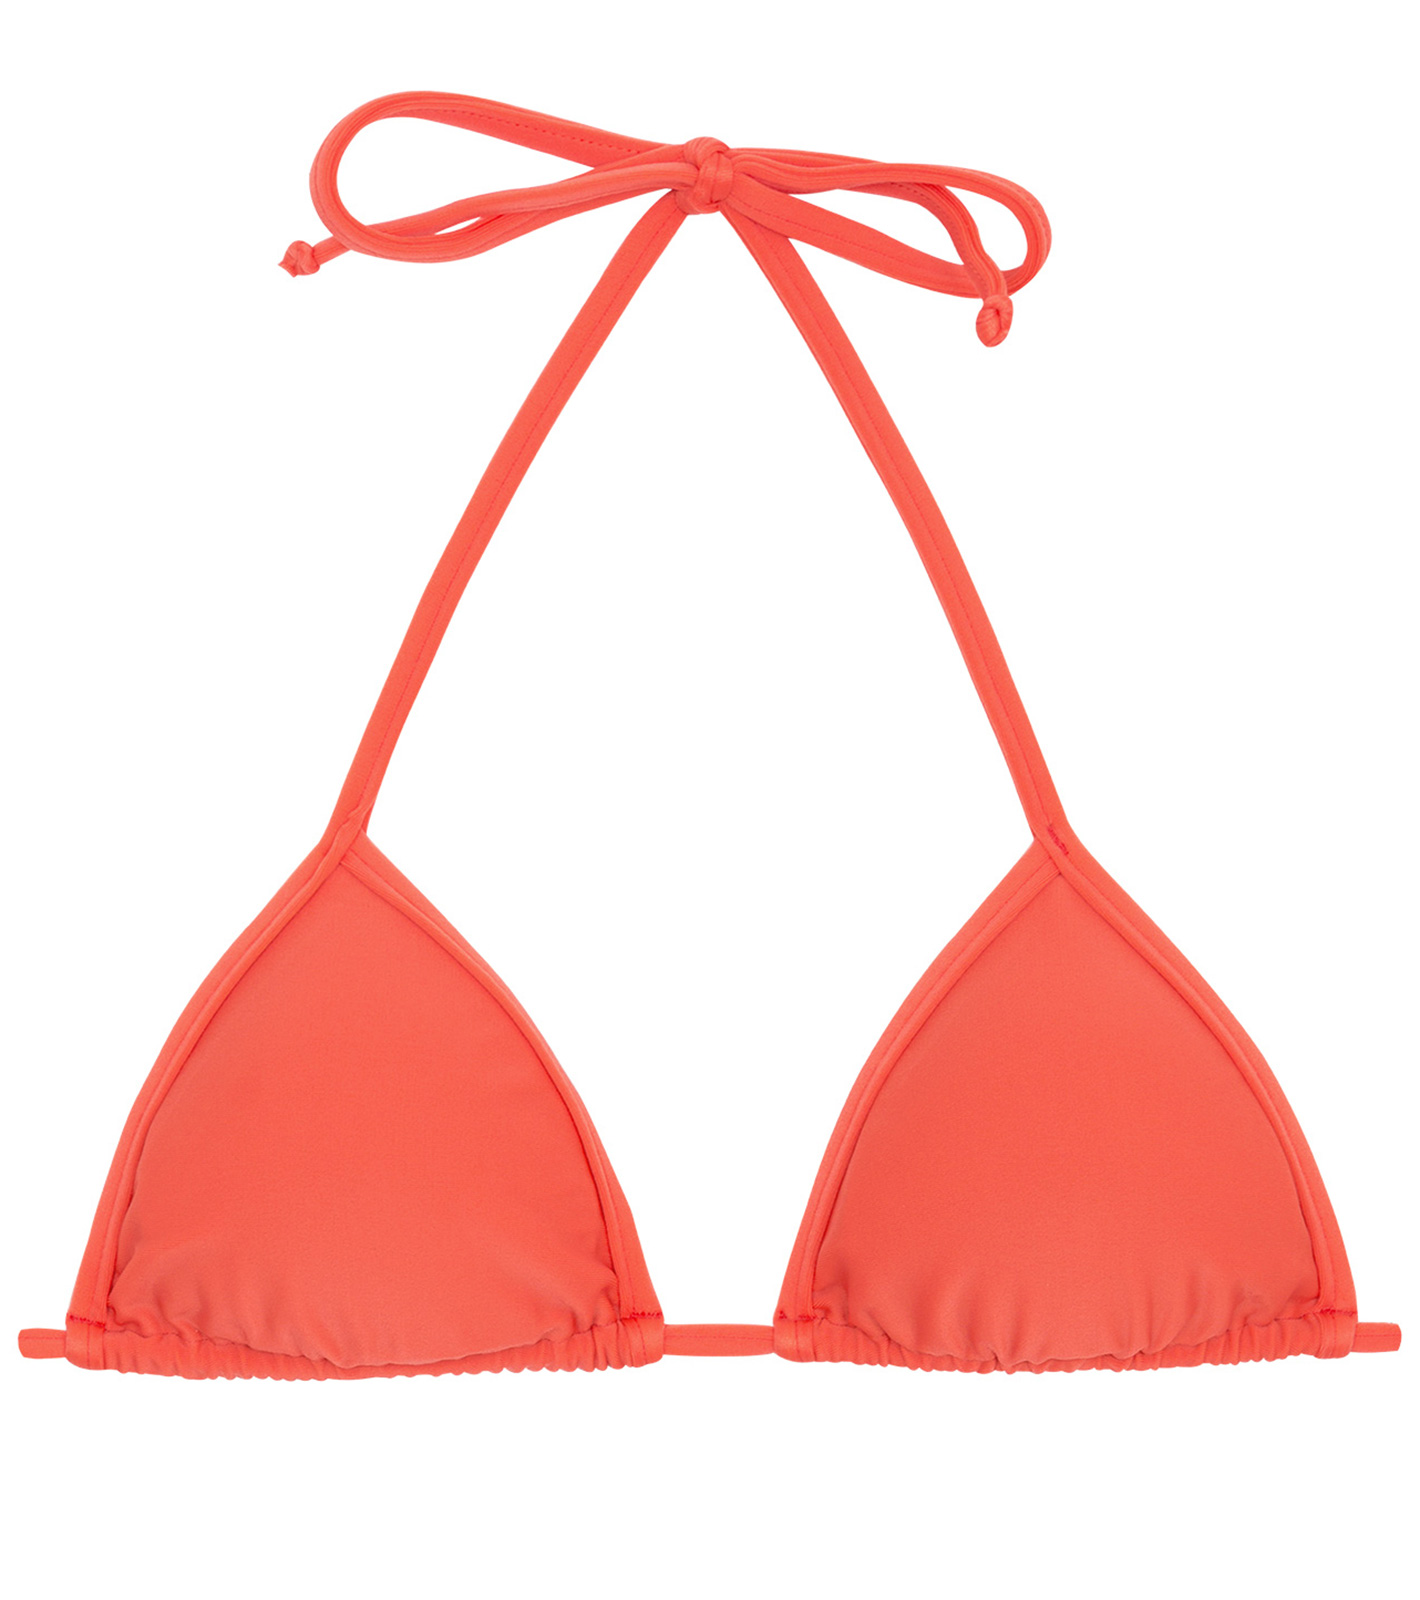 Bikini Tops Salmon Pink Sliding Triangle Top - Top Tabata Tri